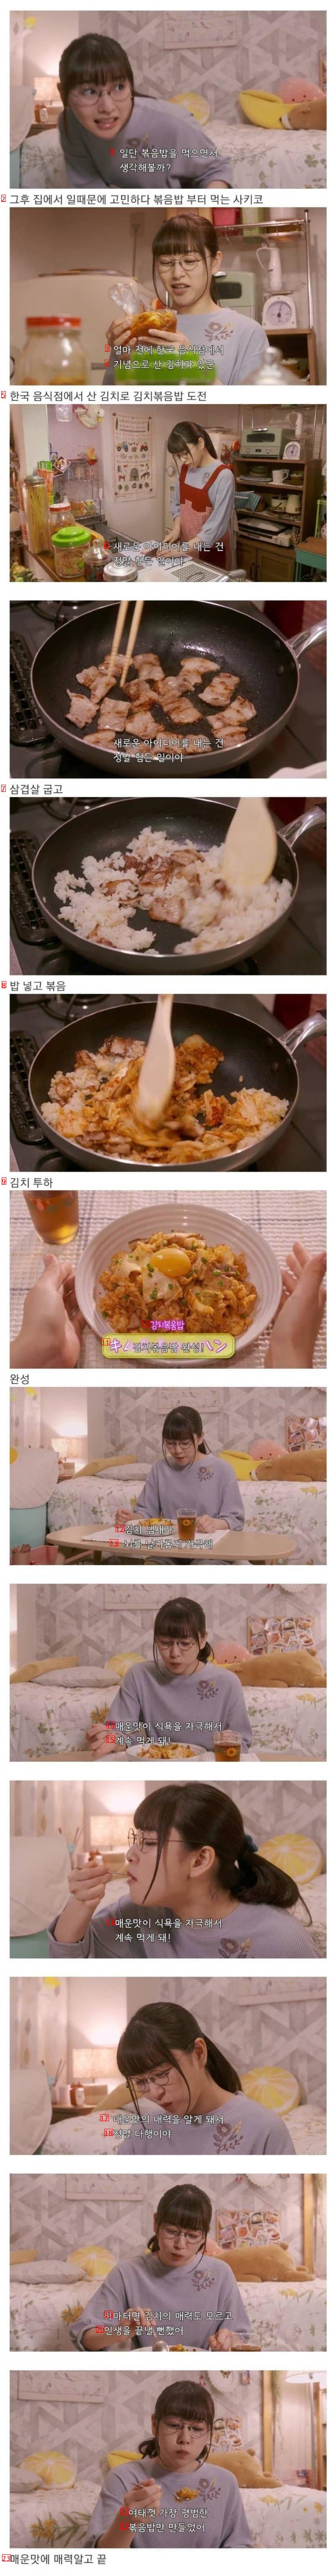 일본 드라마 속 한국 음식